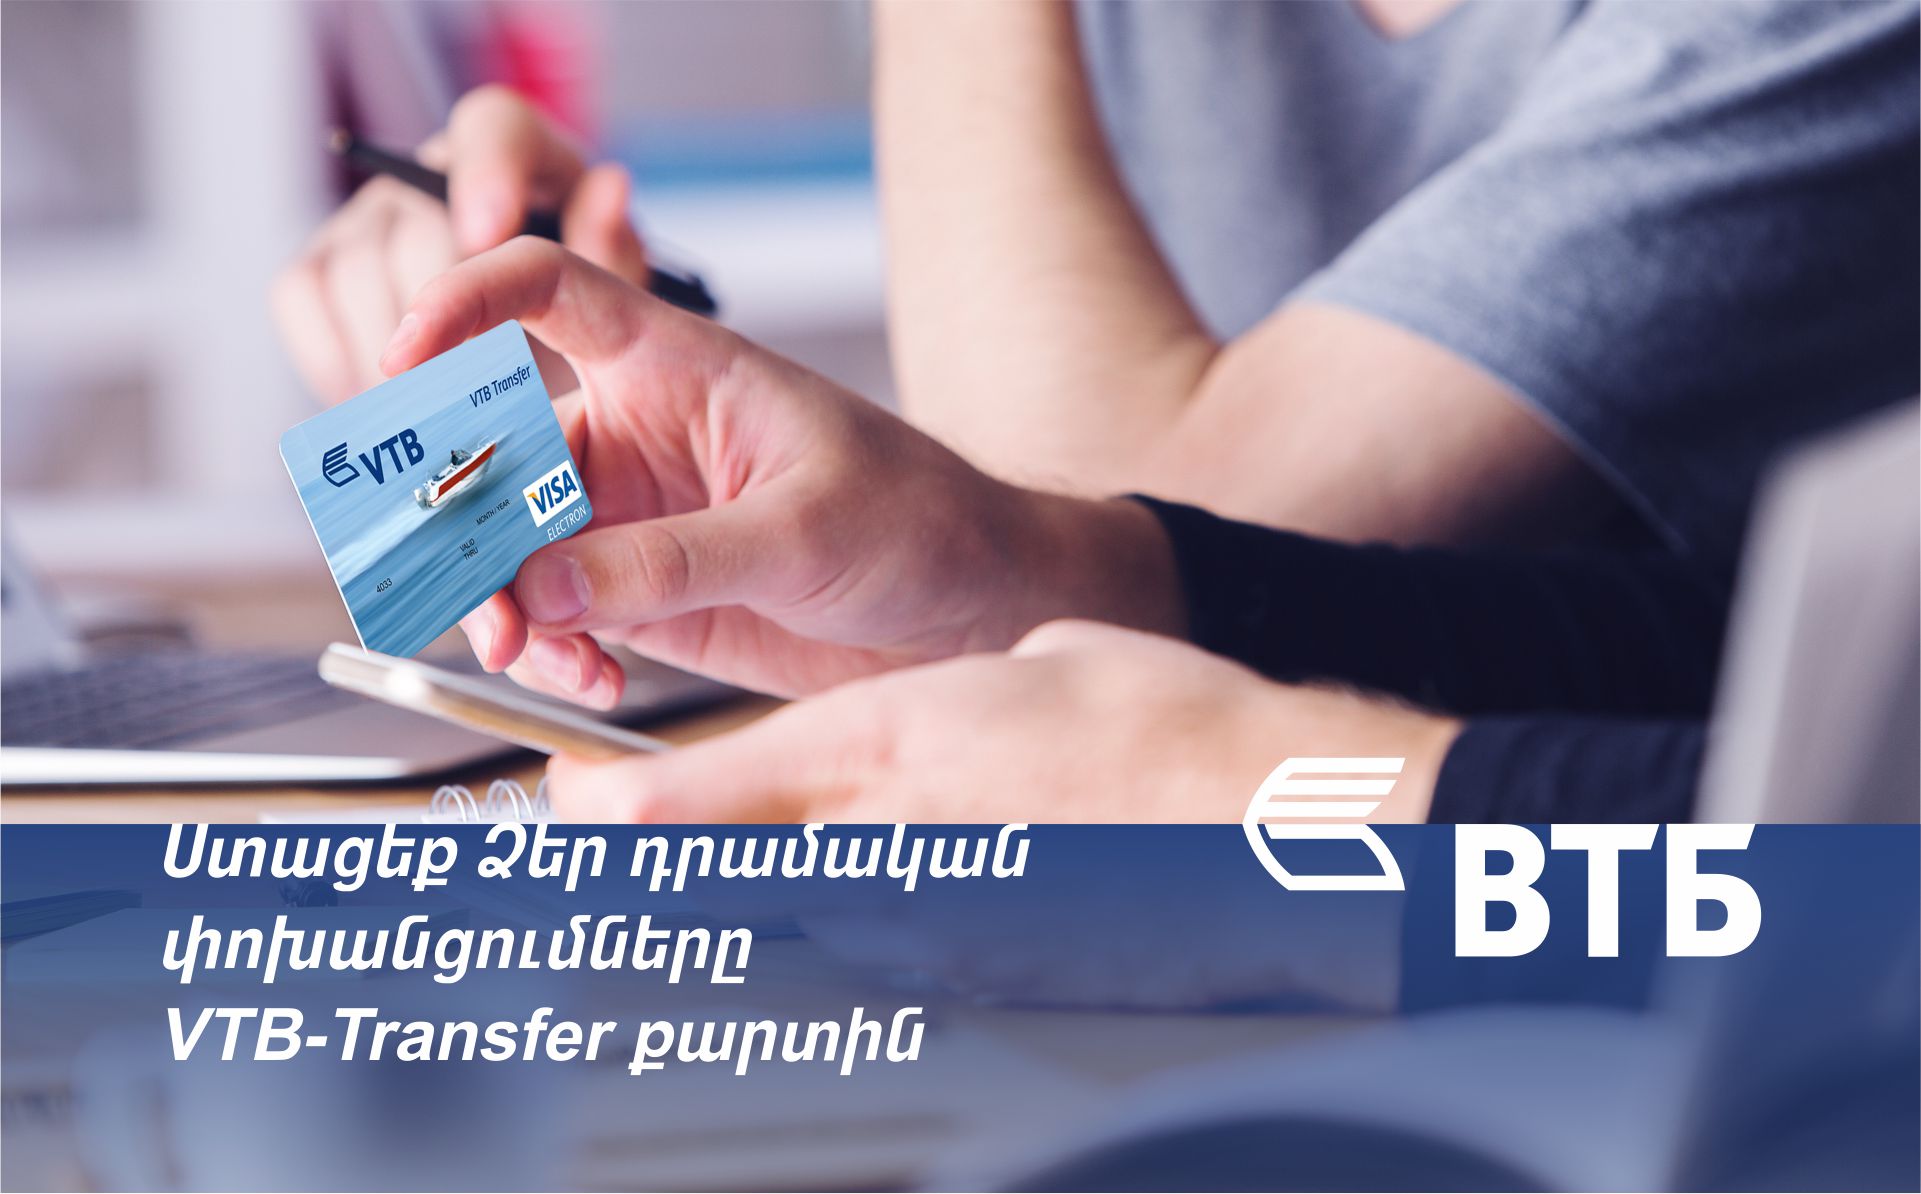 ՎՏԲ-Հայաստան Բանկն առաջարկում է հատուկ VTB-Transfer քարտ արտերկրից դրամական փոխանցումներ ստանալու համար, առանց մասնաճյուղ այցելելու անհրաժեշտության: